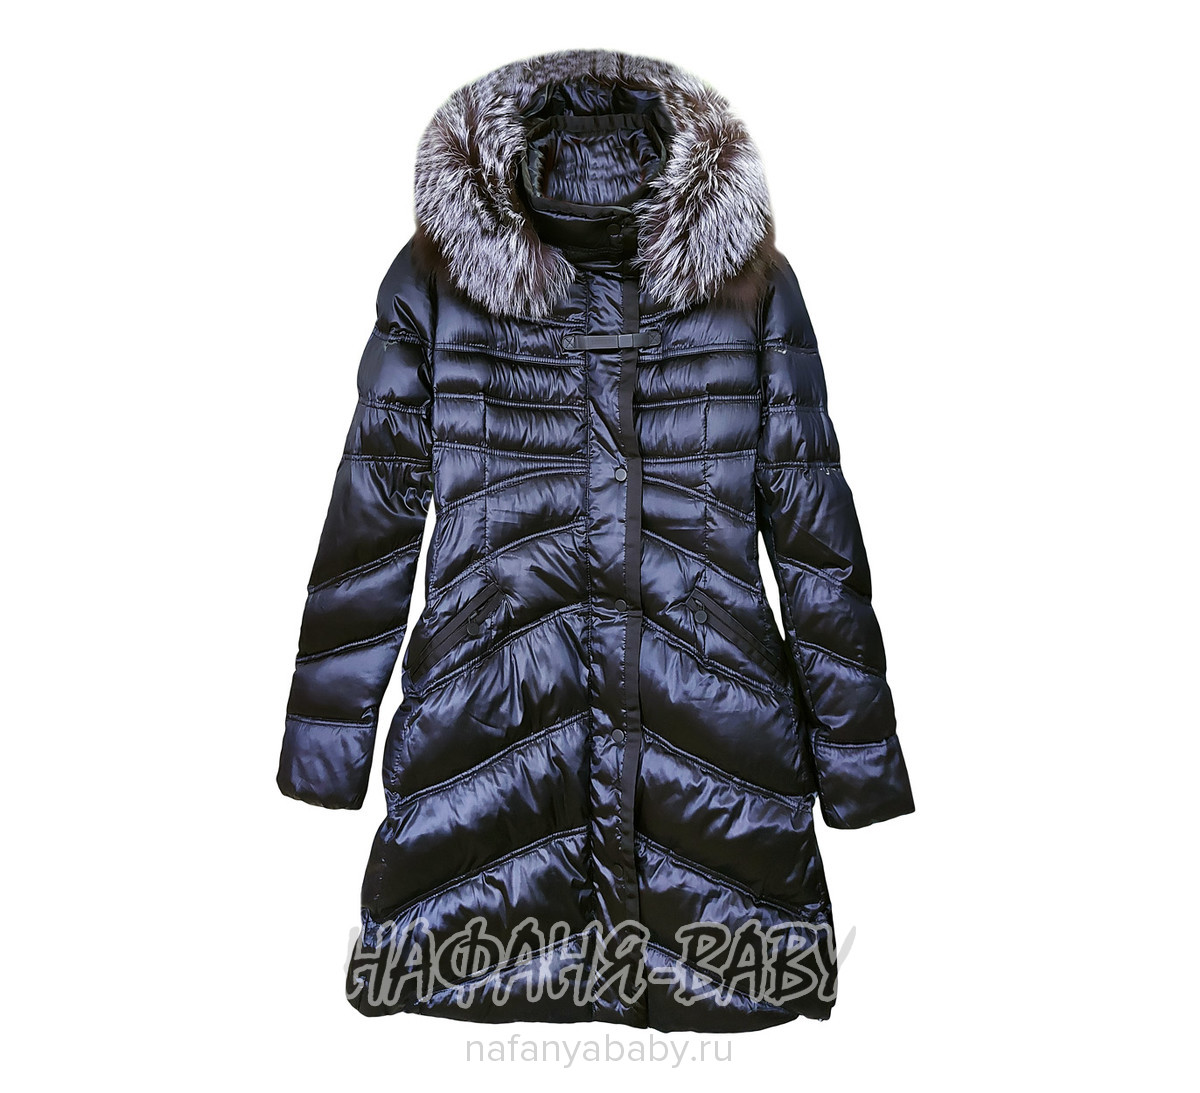 Пальто - пуховик LOSS BINI, купить в интернет магазине Нафаня. арт: 11115.